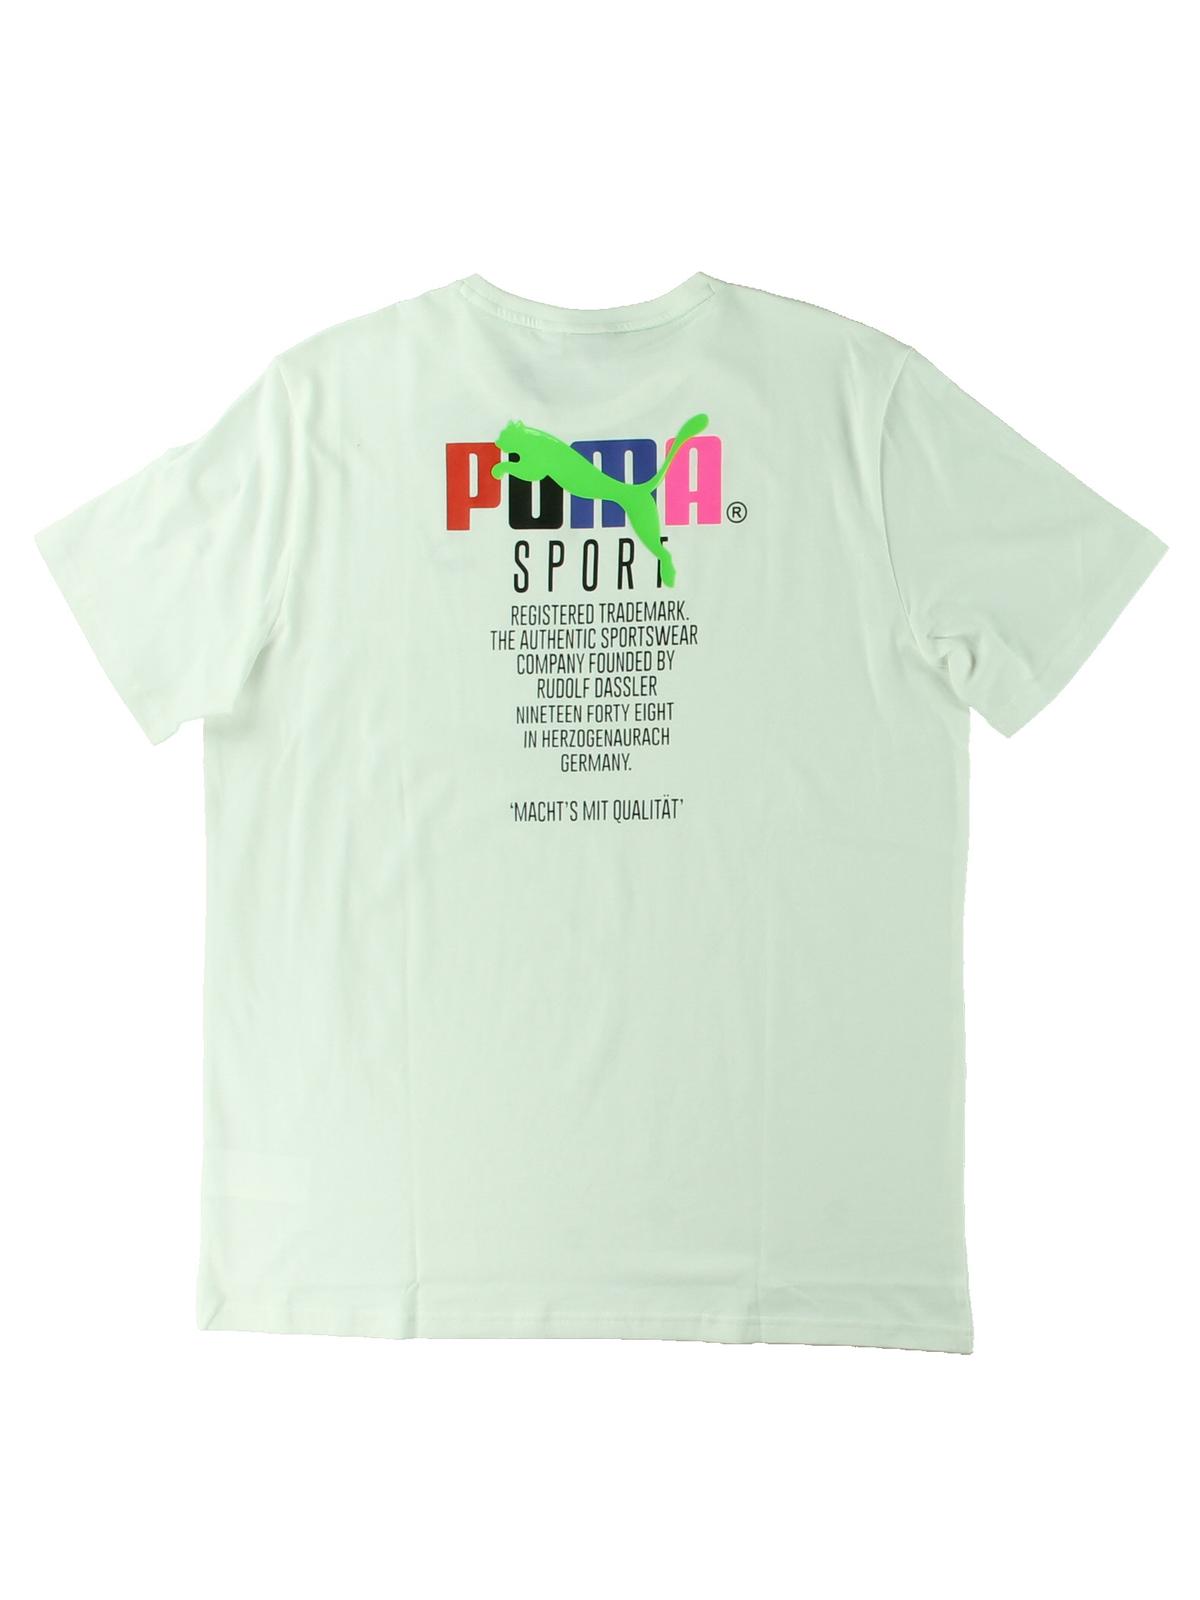 Puma Mens Running Fitness T-Shirt White S - image 2 of 2